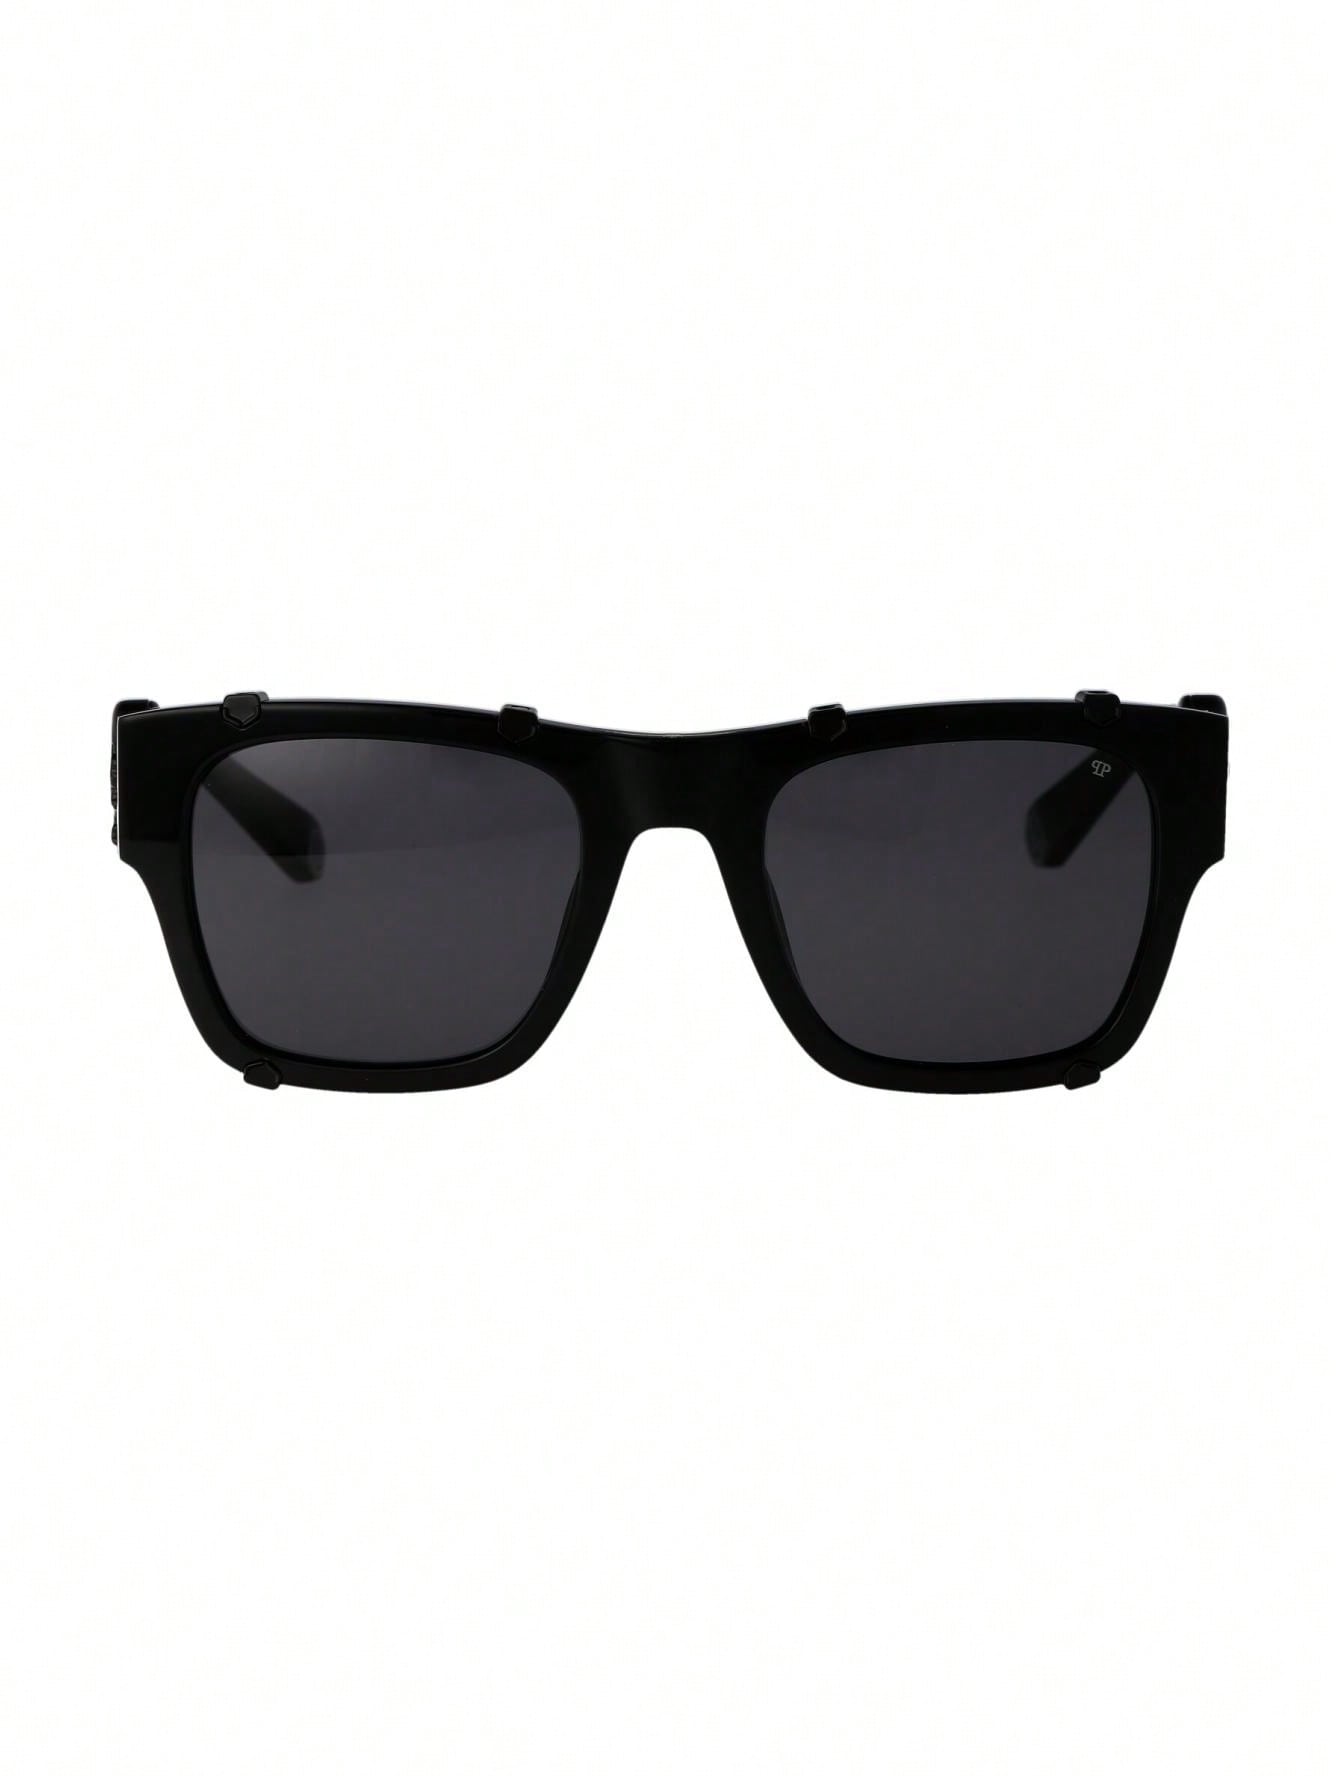 Мужские солнцезащитные очки Philipp Plein DECOR SPP042V700V, многоцветный